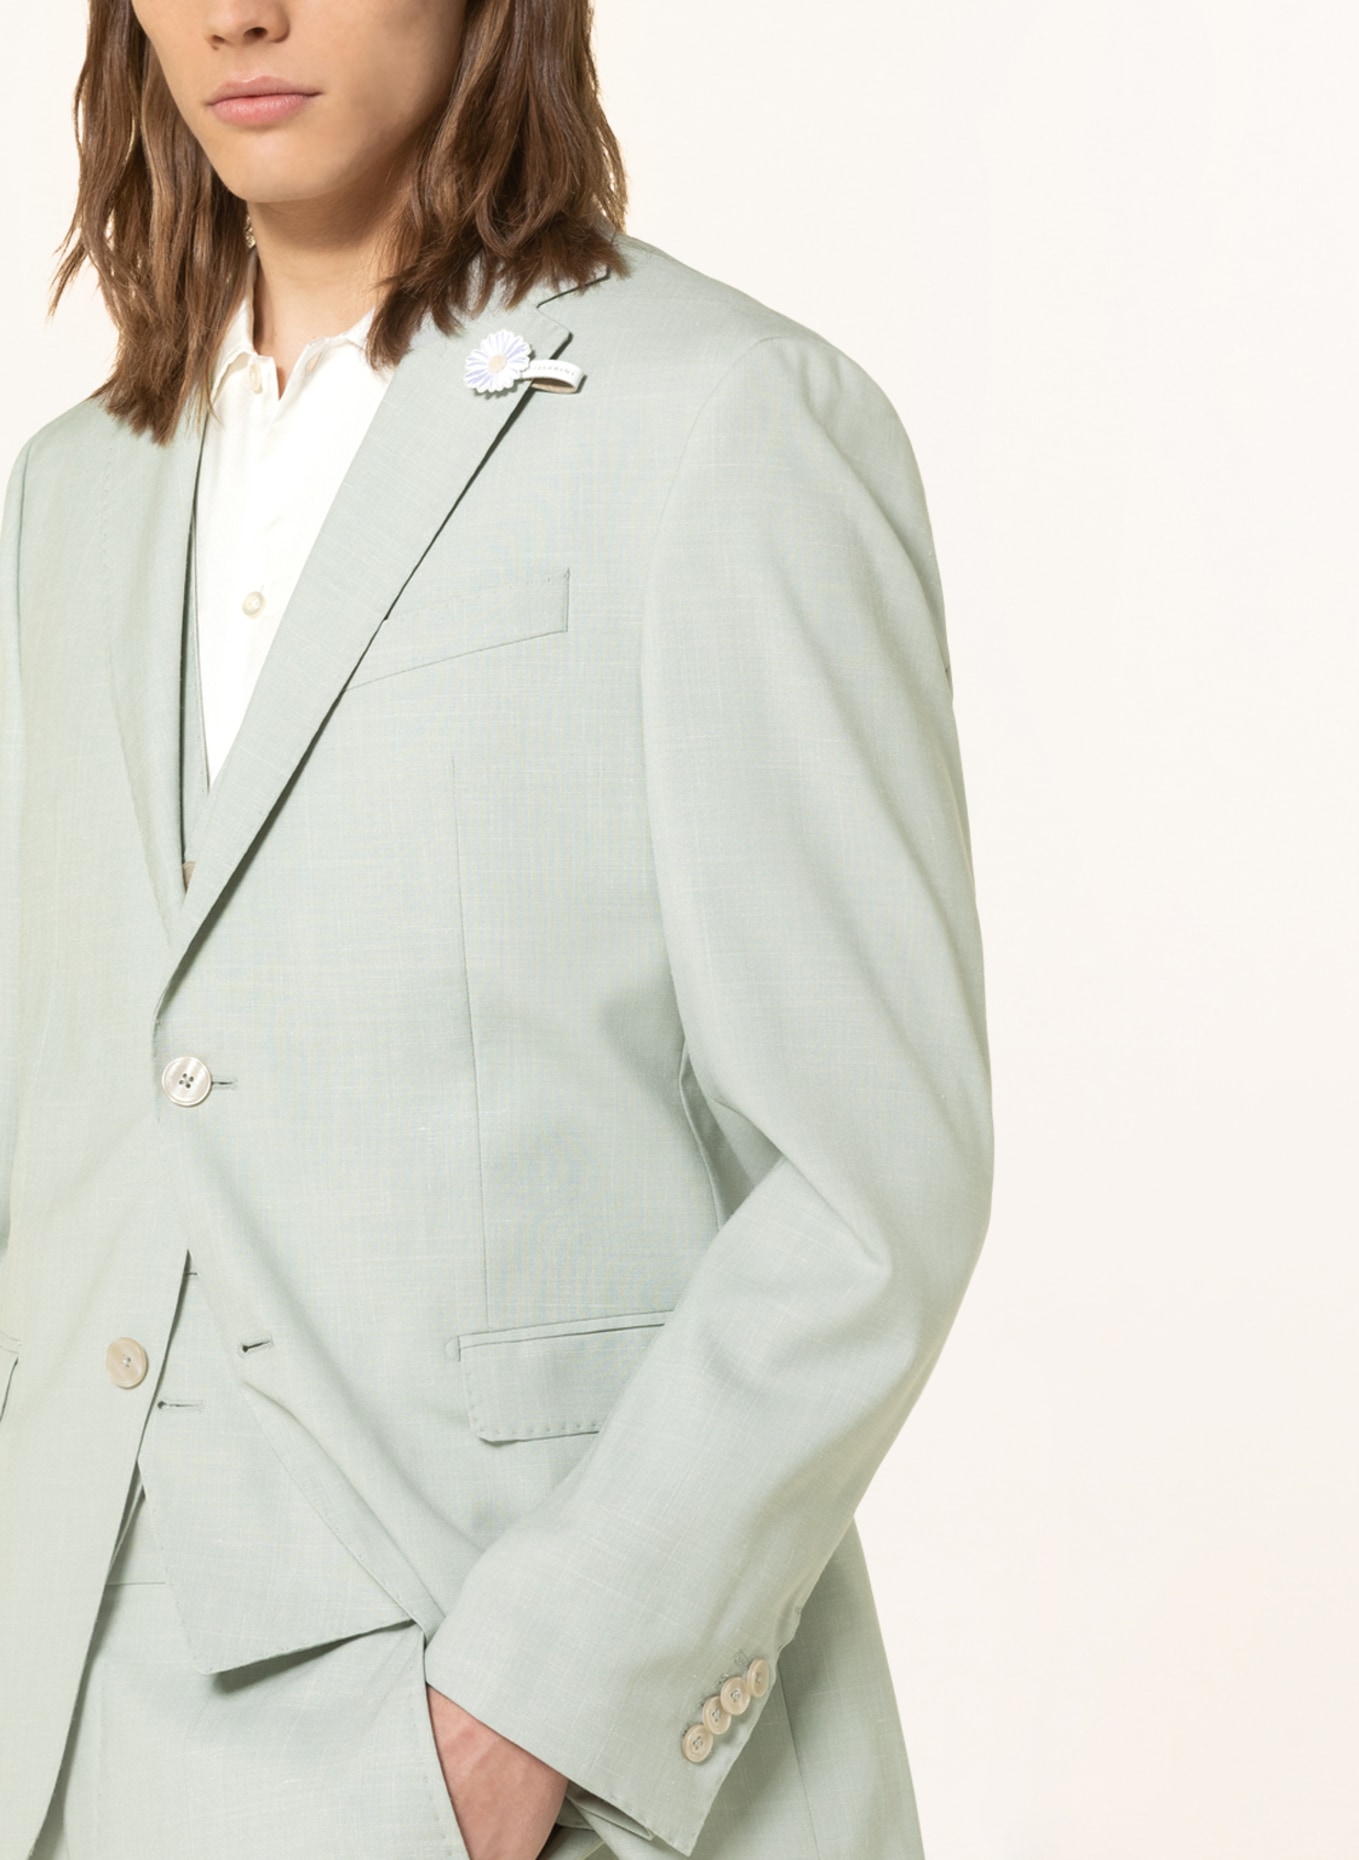 BALDESSARINI Suit jacket regular fit, Color: 5110 Green Bay (Image 6)